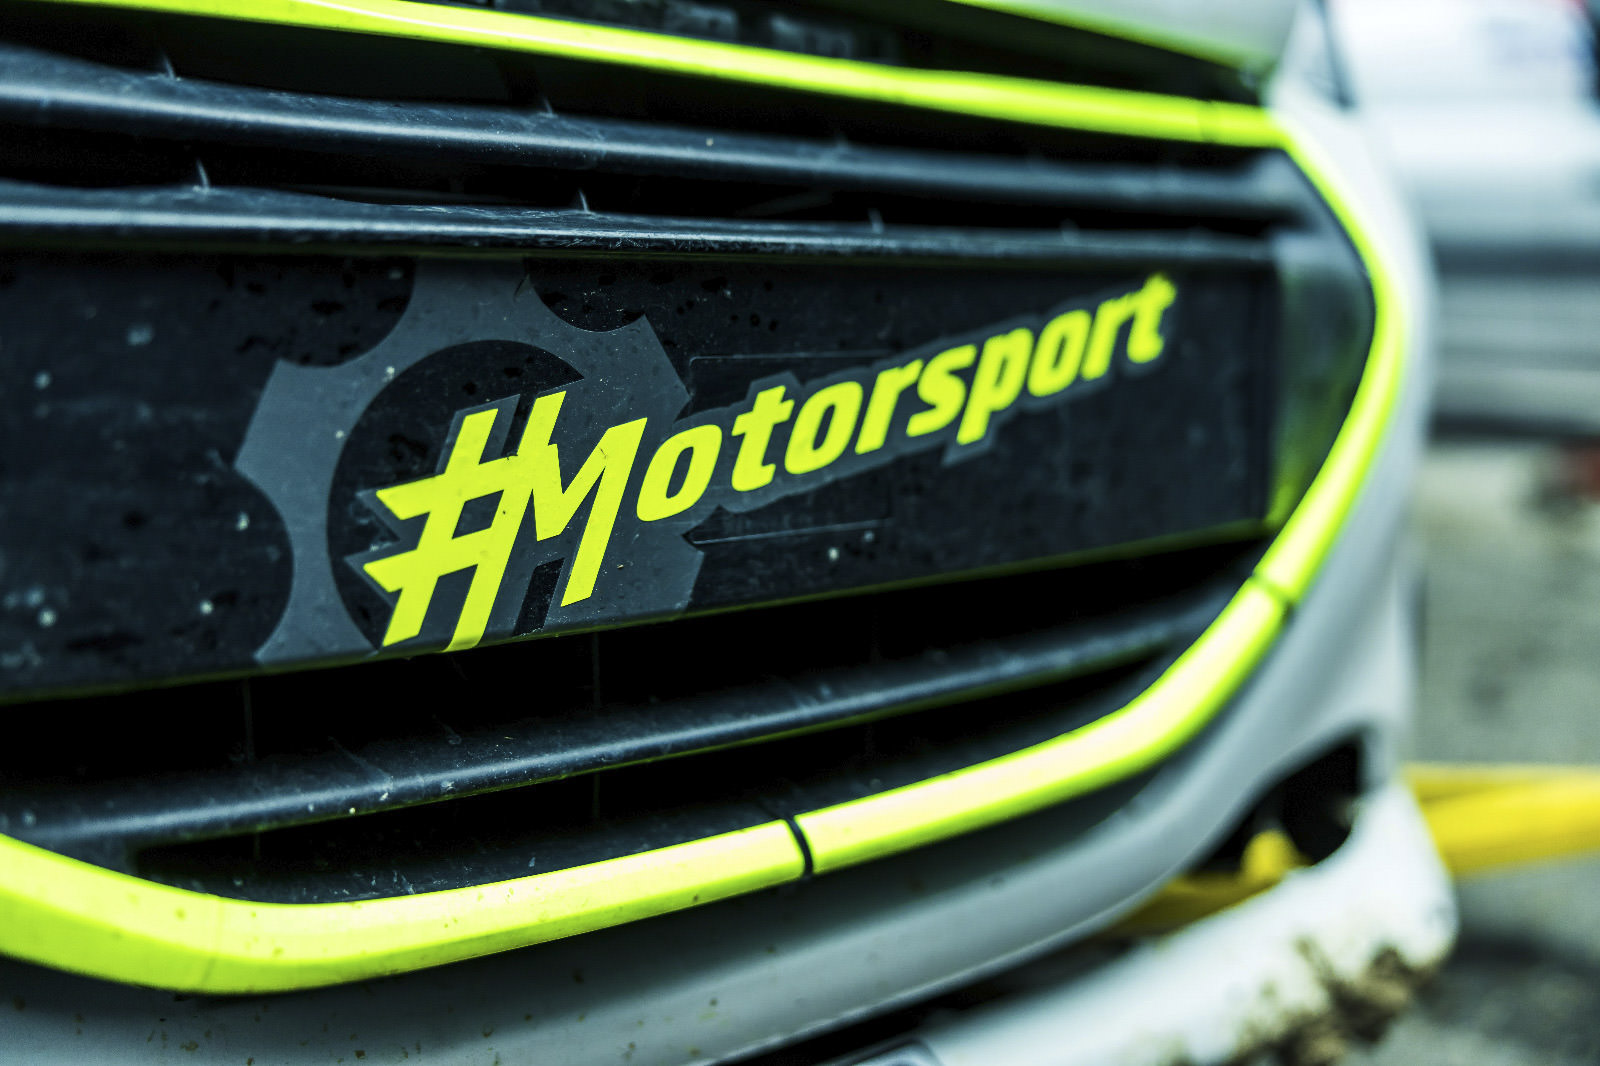 Echipa tehnică #Motorsport, prezență puternică cu 14 echipaje în campionatele naționale și europene de automobilism